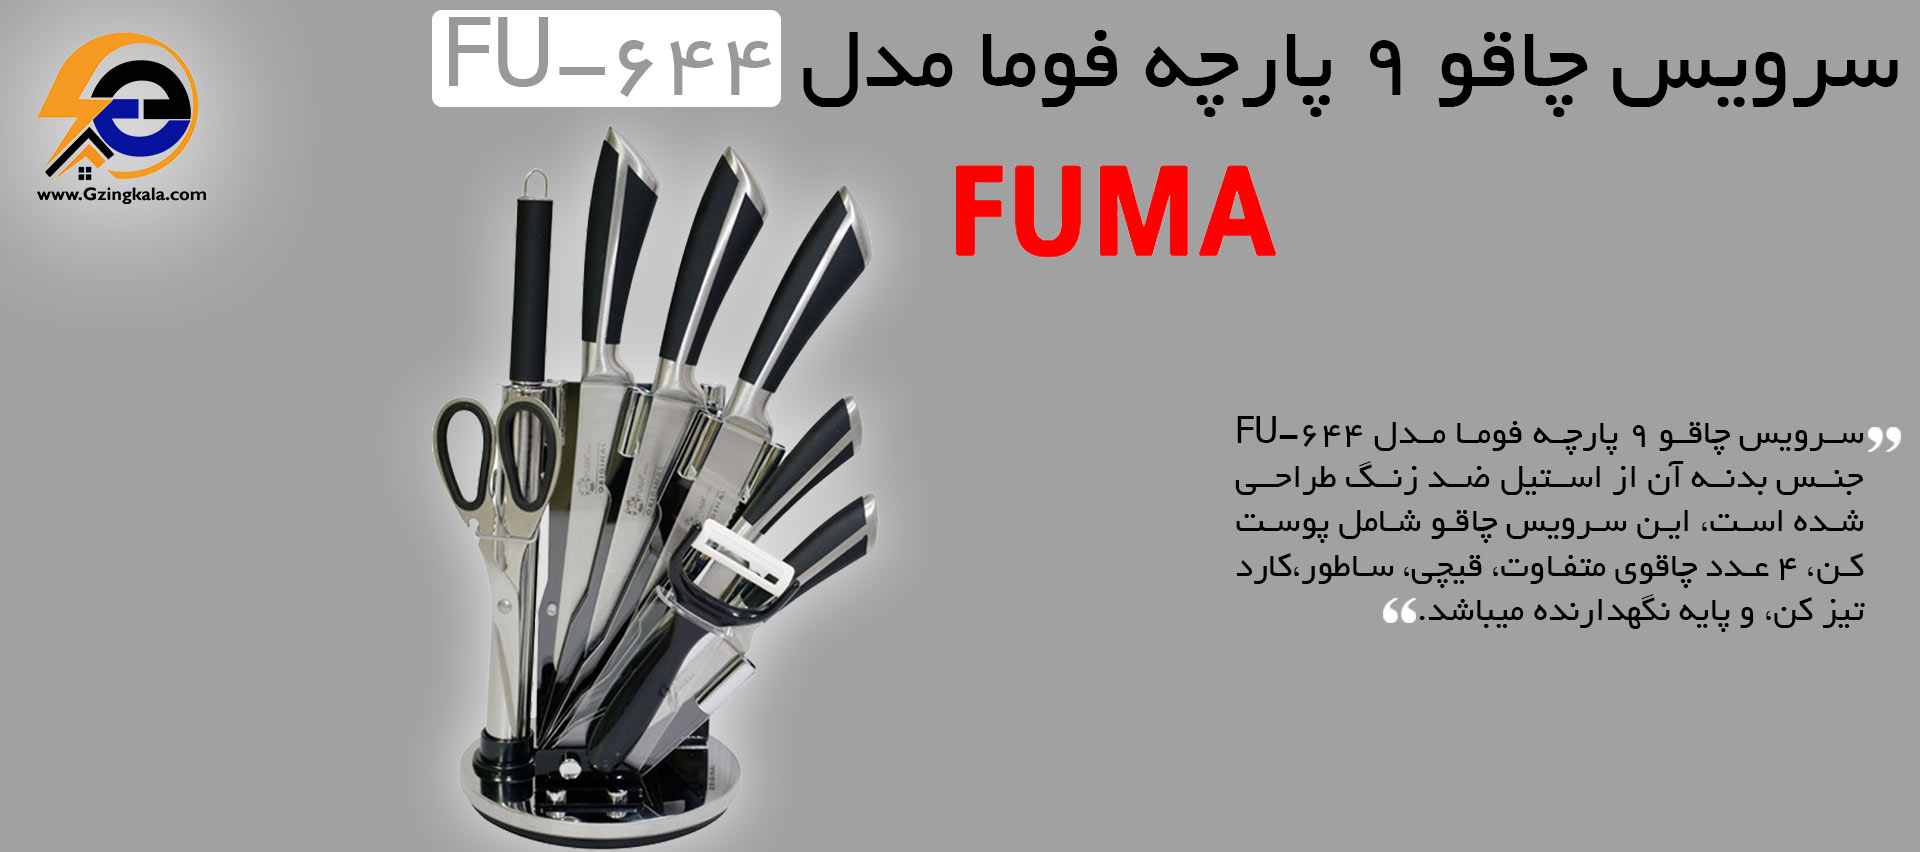 سرویس چاقو 9 پارچه فوما مدل FU-644